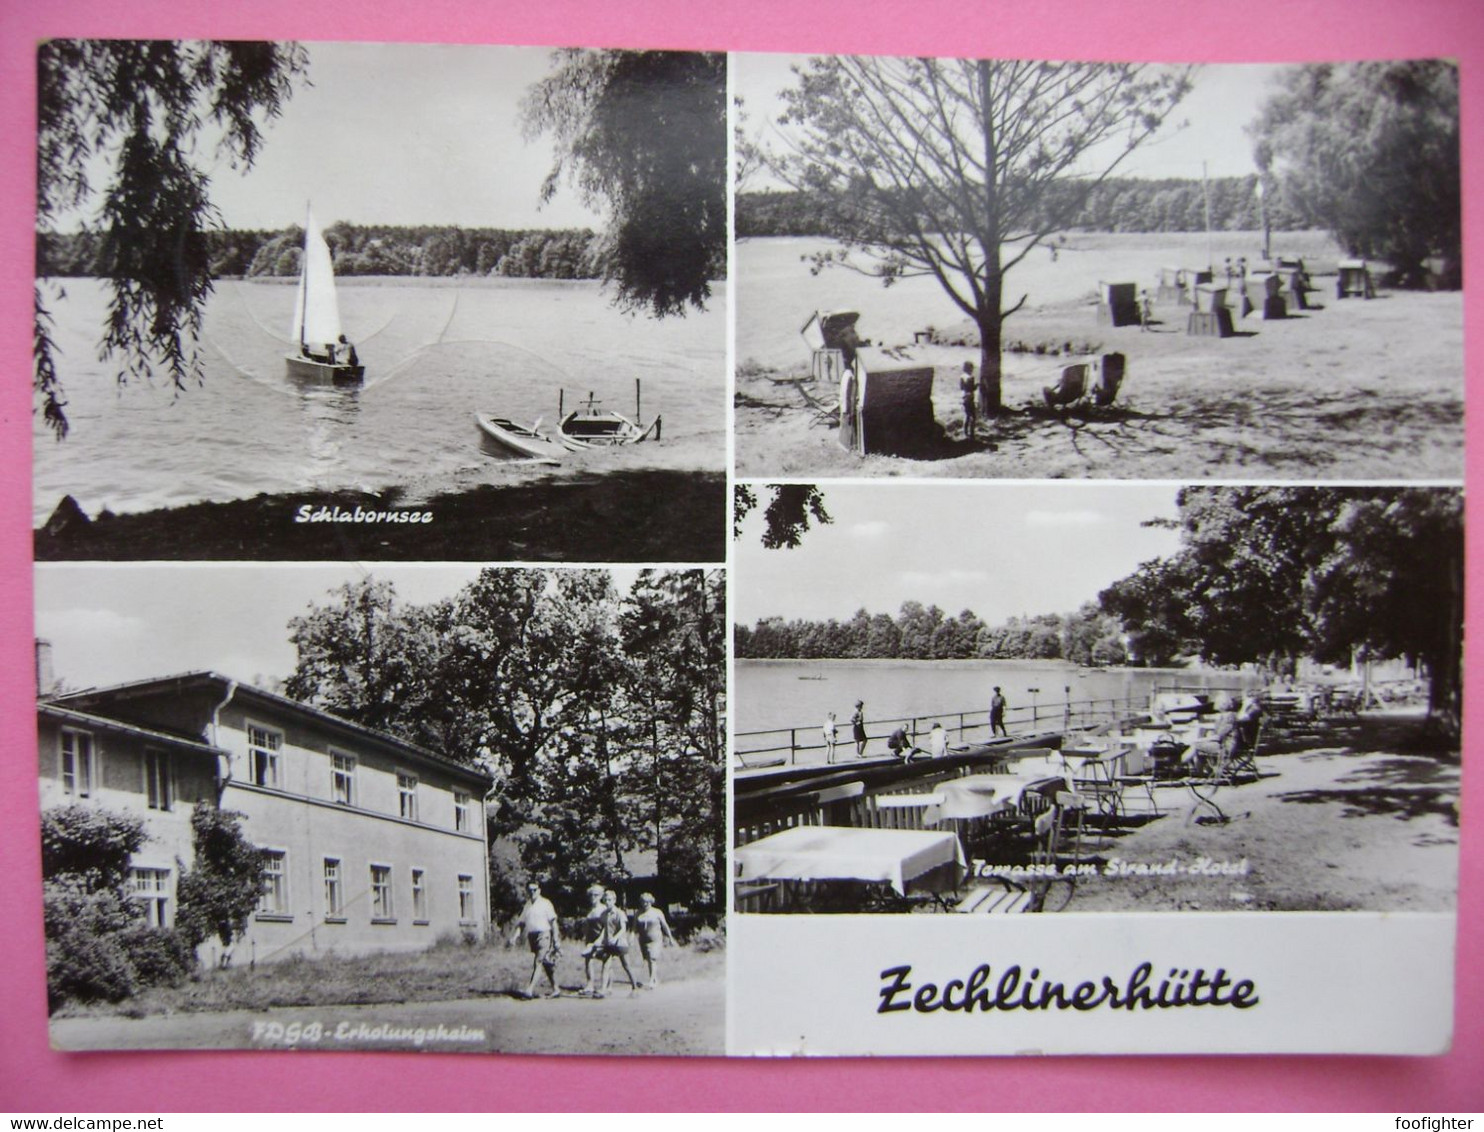 Germany: Zechlinerhütte - Schlabornsee, FDGB Erholungsheim, Terrasse Am Strand-Hotel - Posted 1975 - Zechlinerhütte